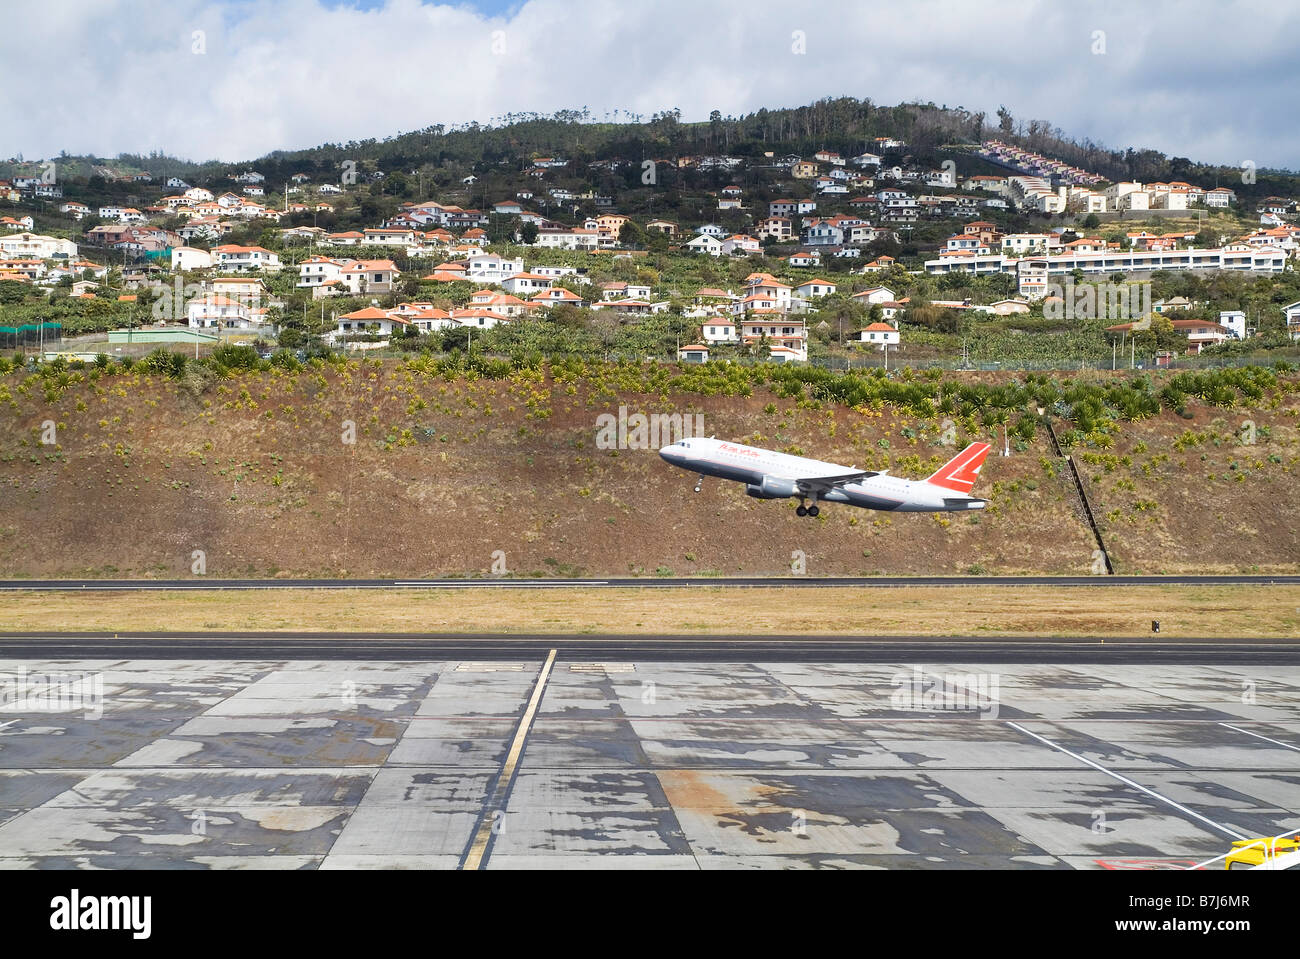 dh Aeroporto de Madeira AÉROPORT DE FUNCHAL MADEIRA avion levant hors de la piste d'atterrissage au-dessus de l'avion avion avion avion prendre Banque D'Images